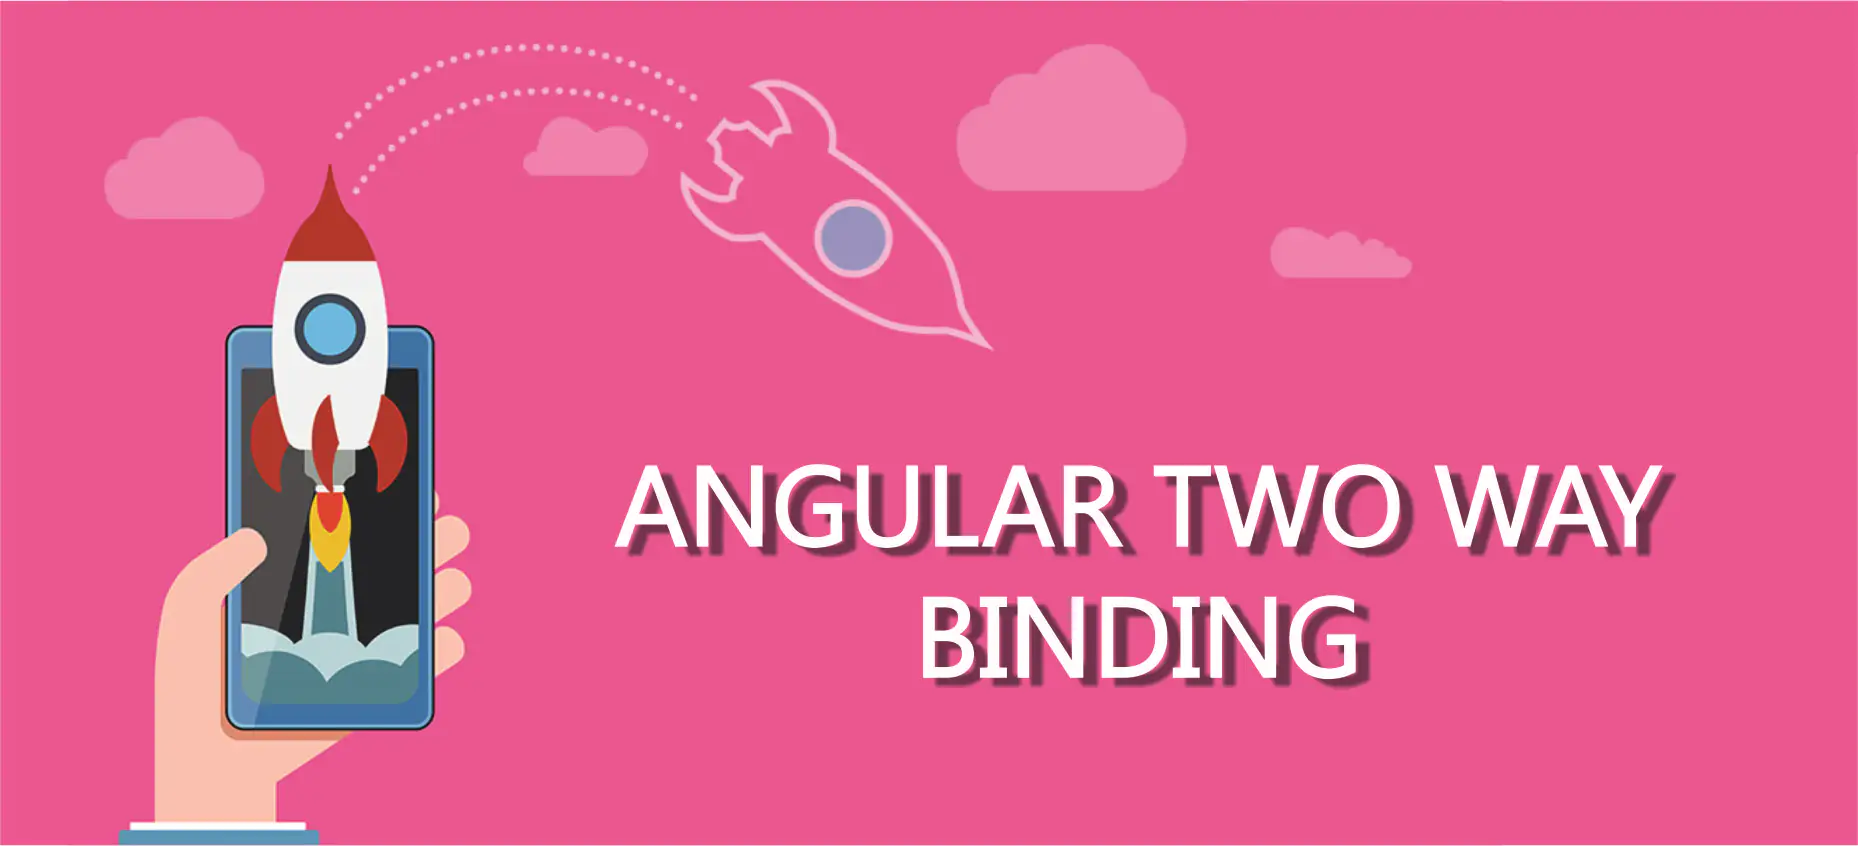 Angular Two Way Binding